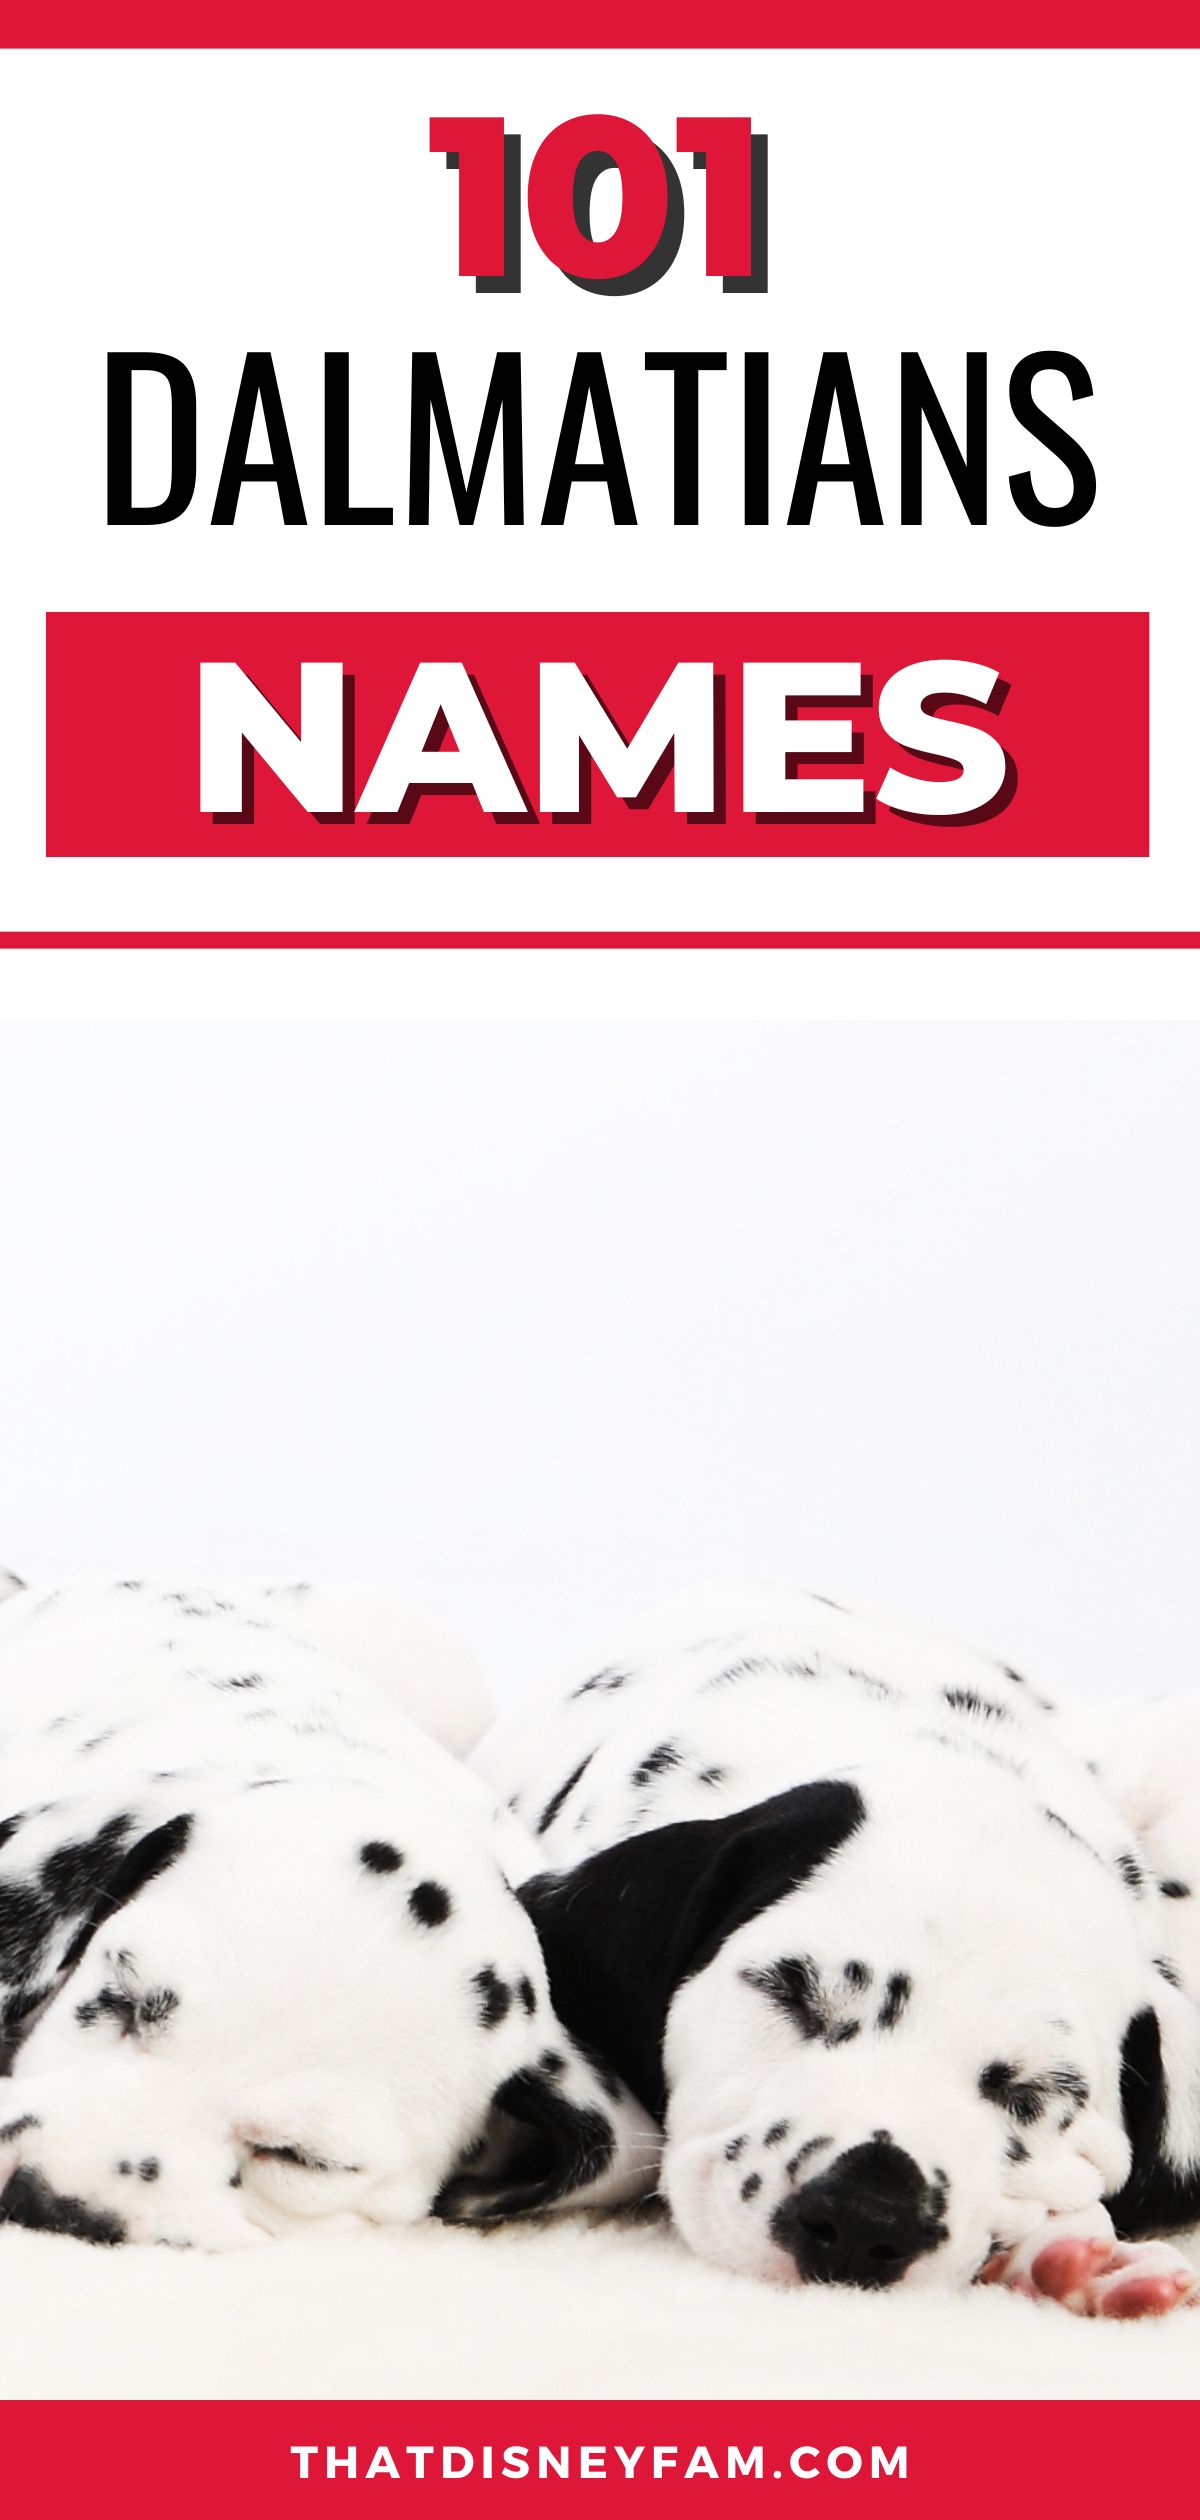 101 dalmatians names